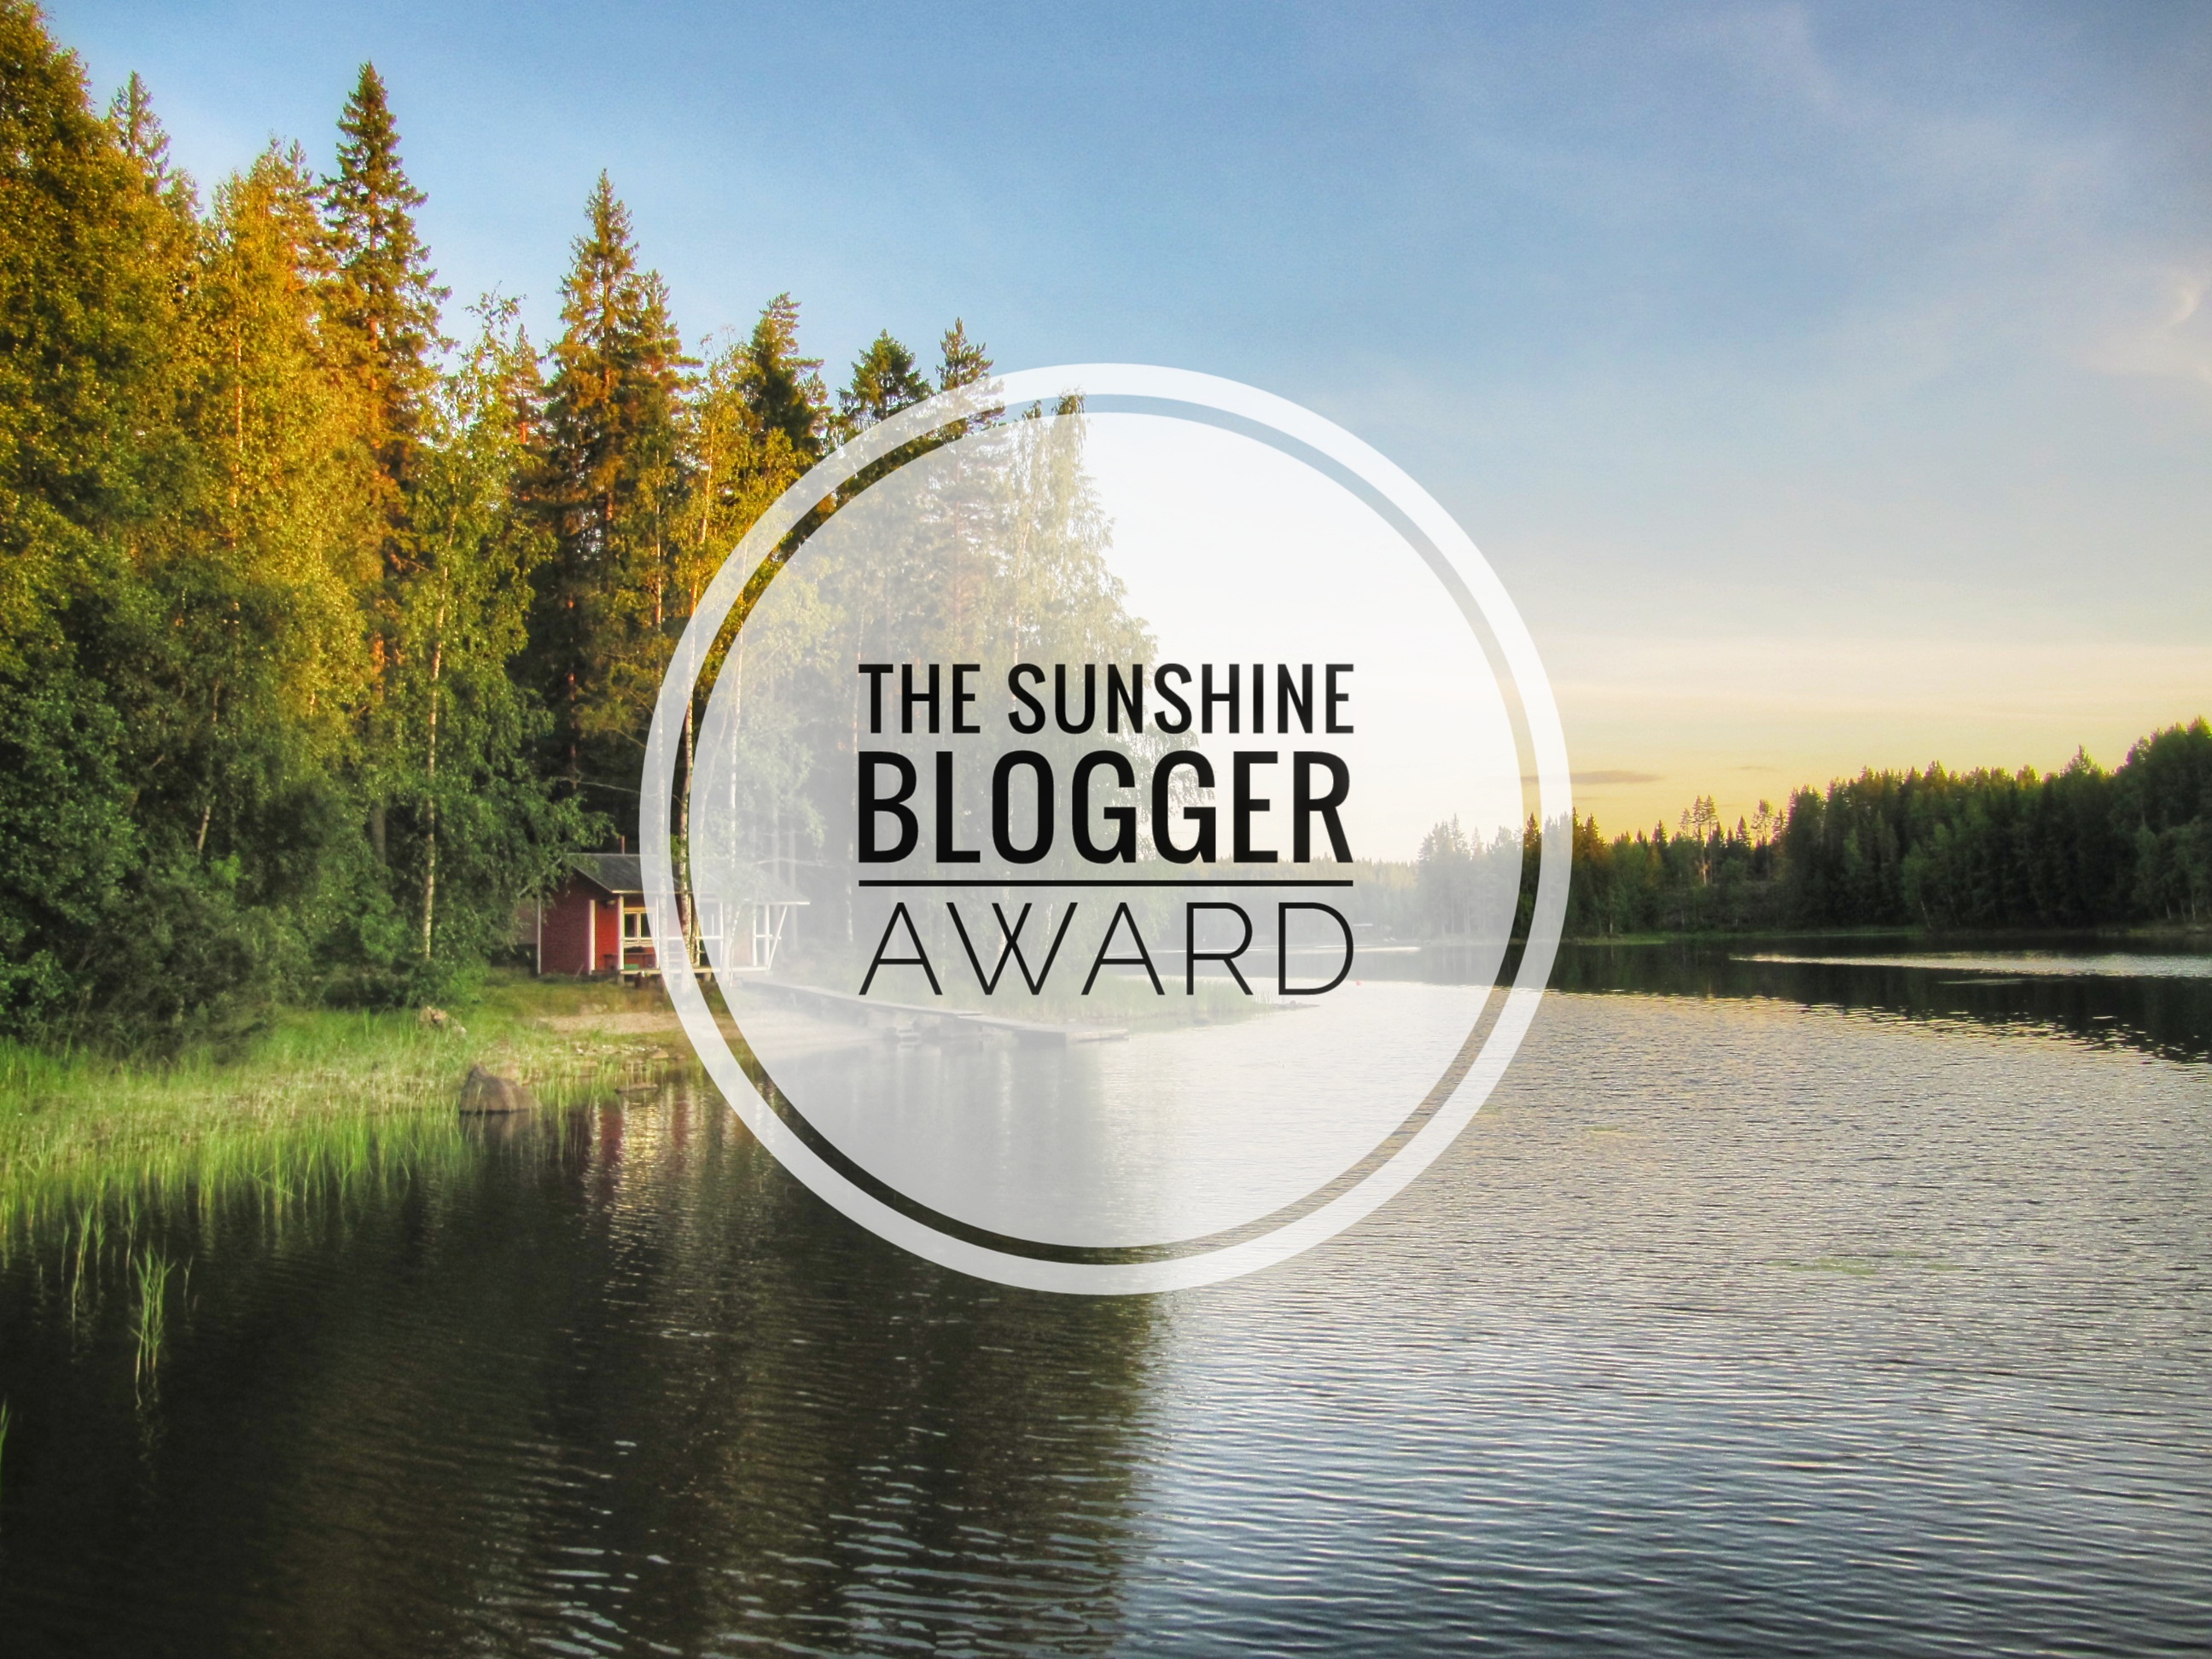 The sunshine blogger Award